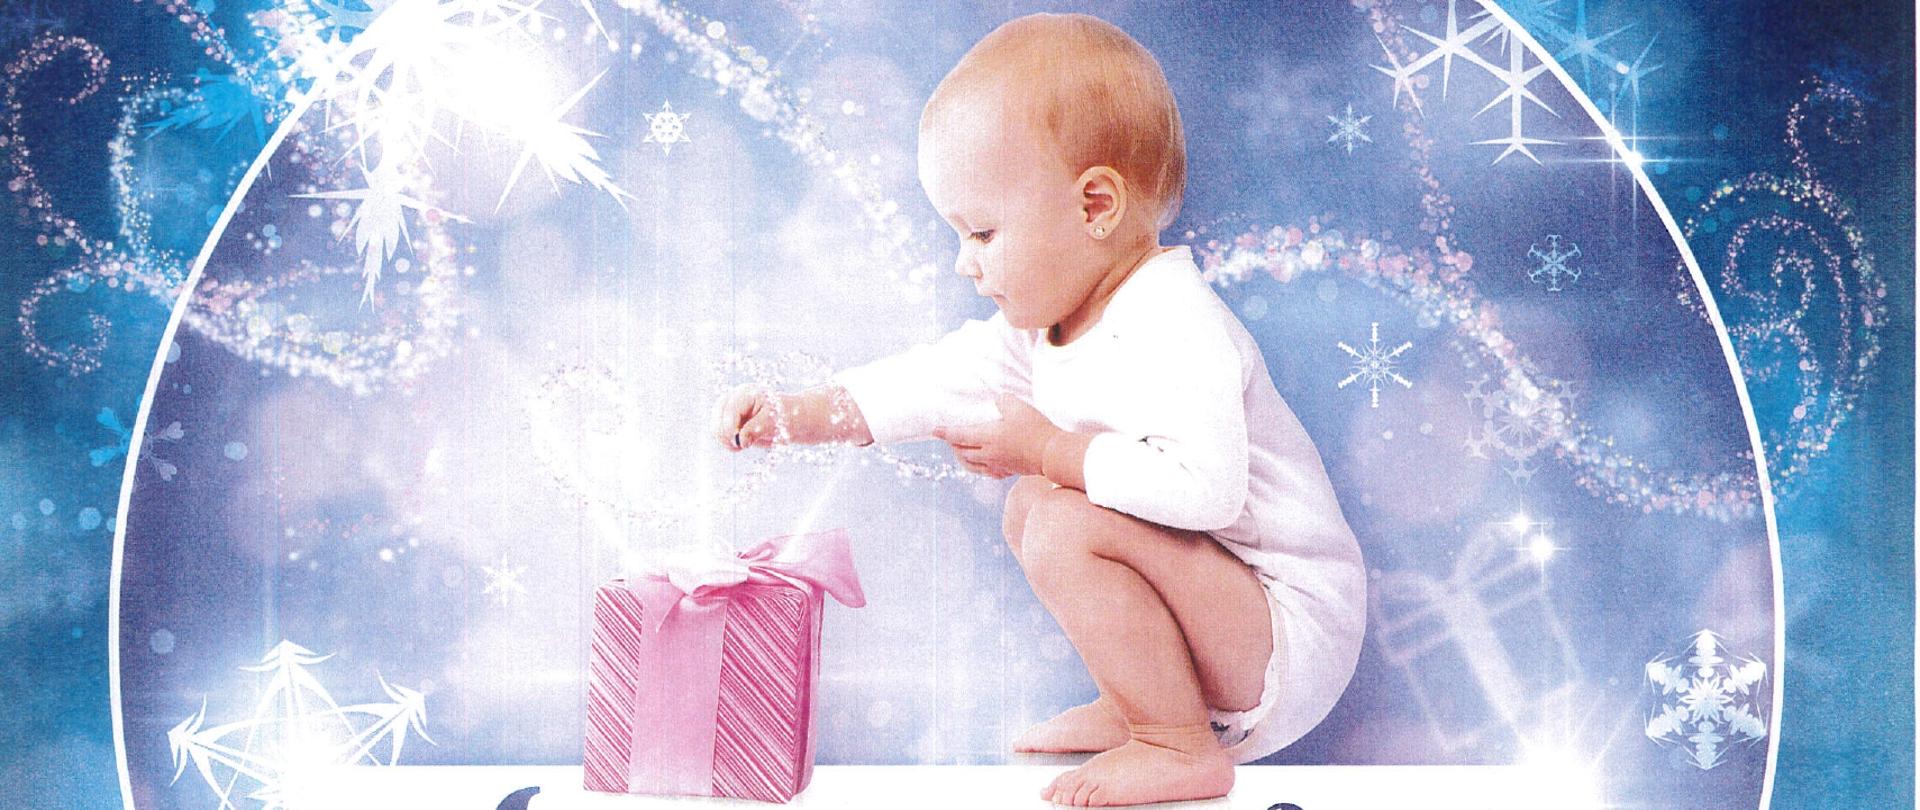 Zdjęcie dziecka sięgającego do paczki prezentowej, poniżej treść informująca o akcji.